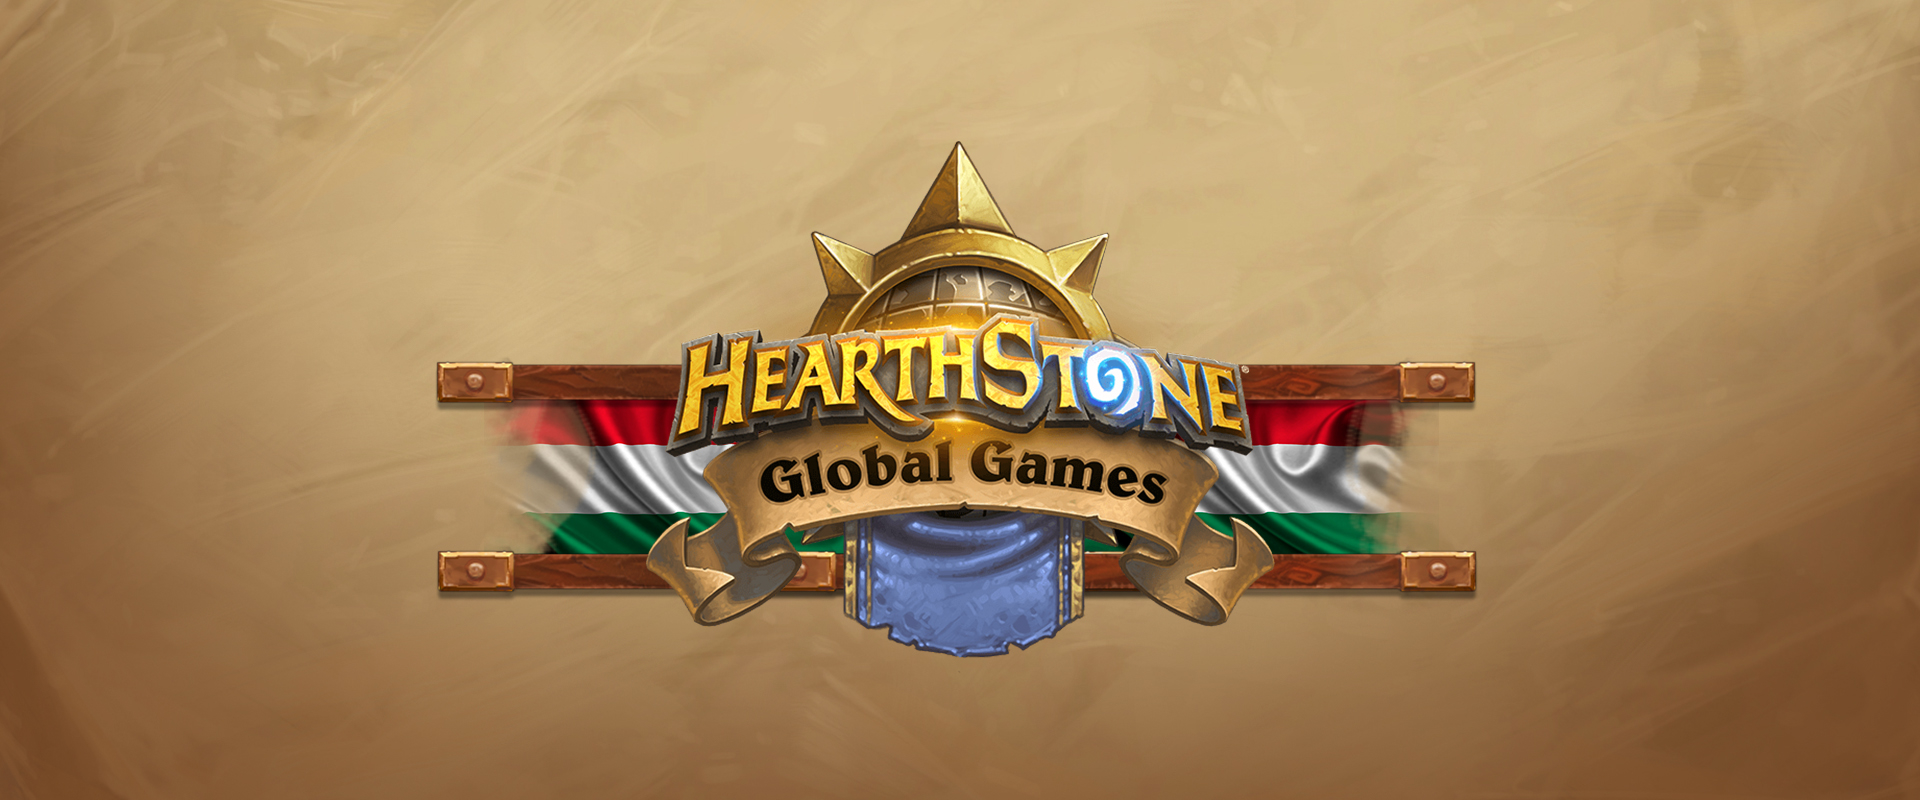 Kire is szavazz a Hearthstone Global Games magyar jelöltjei közül?